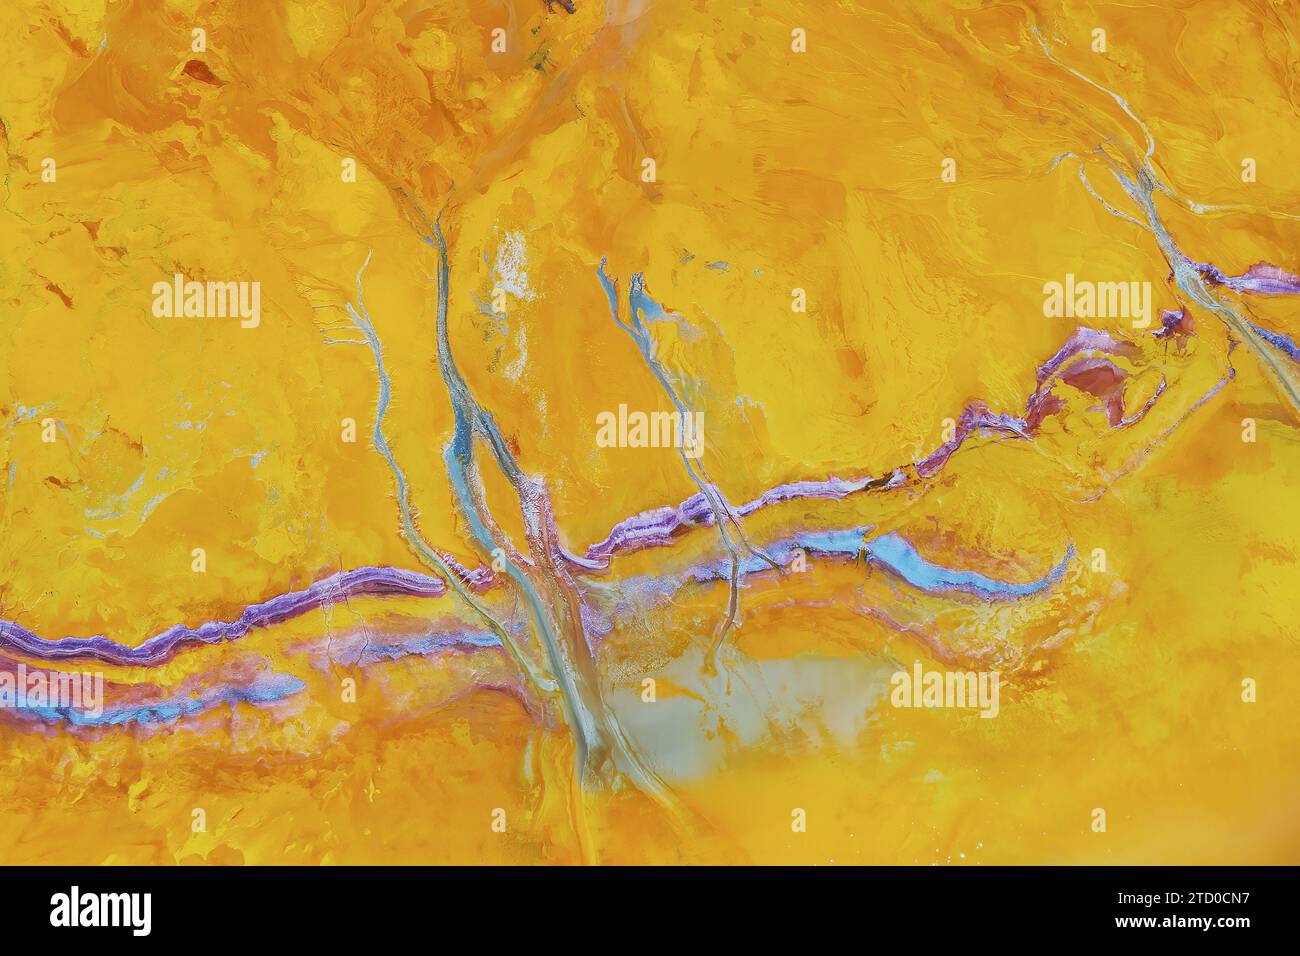 Vue aérienne du district minier de Riotinto avec des nuances vibrantes de gisements minéraux jaunes et violets. Banque D'Images